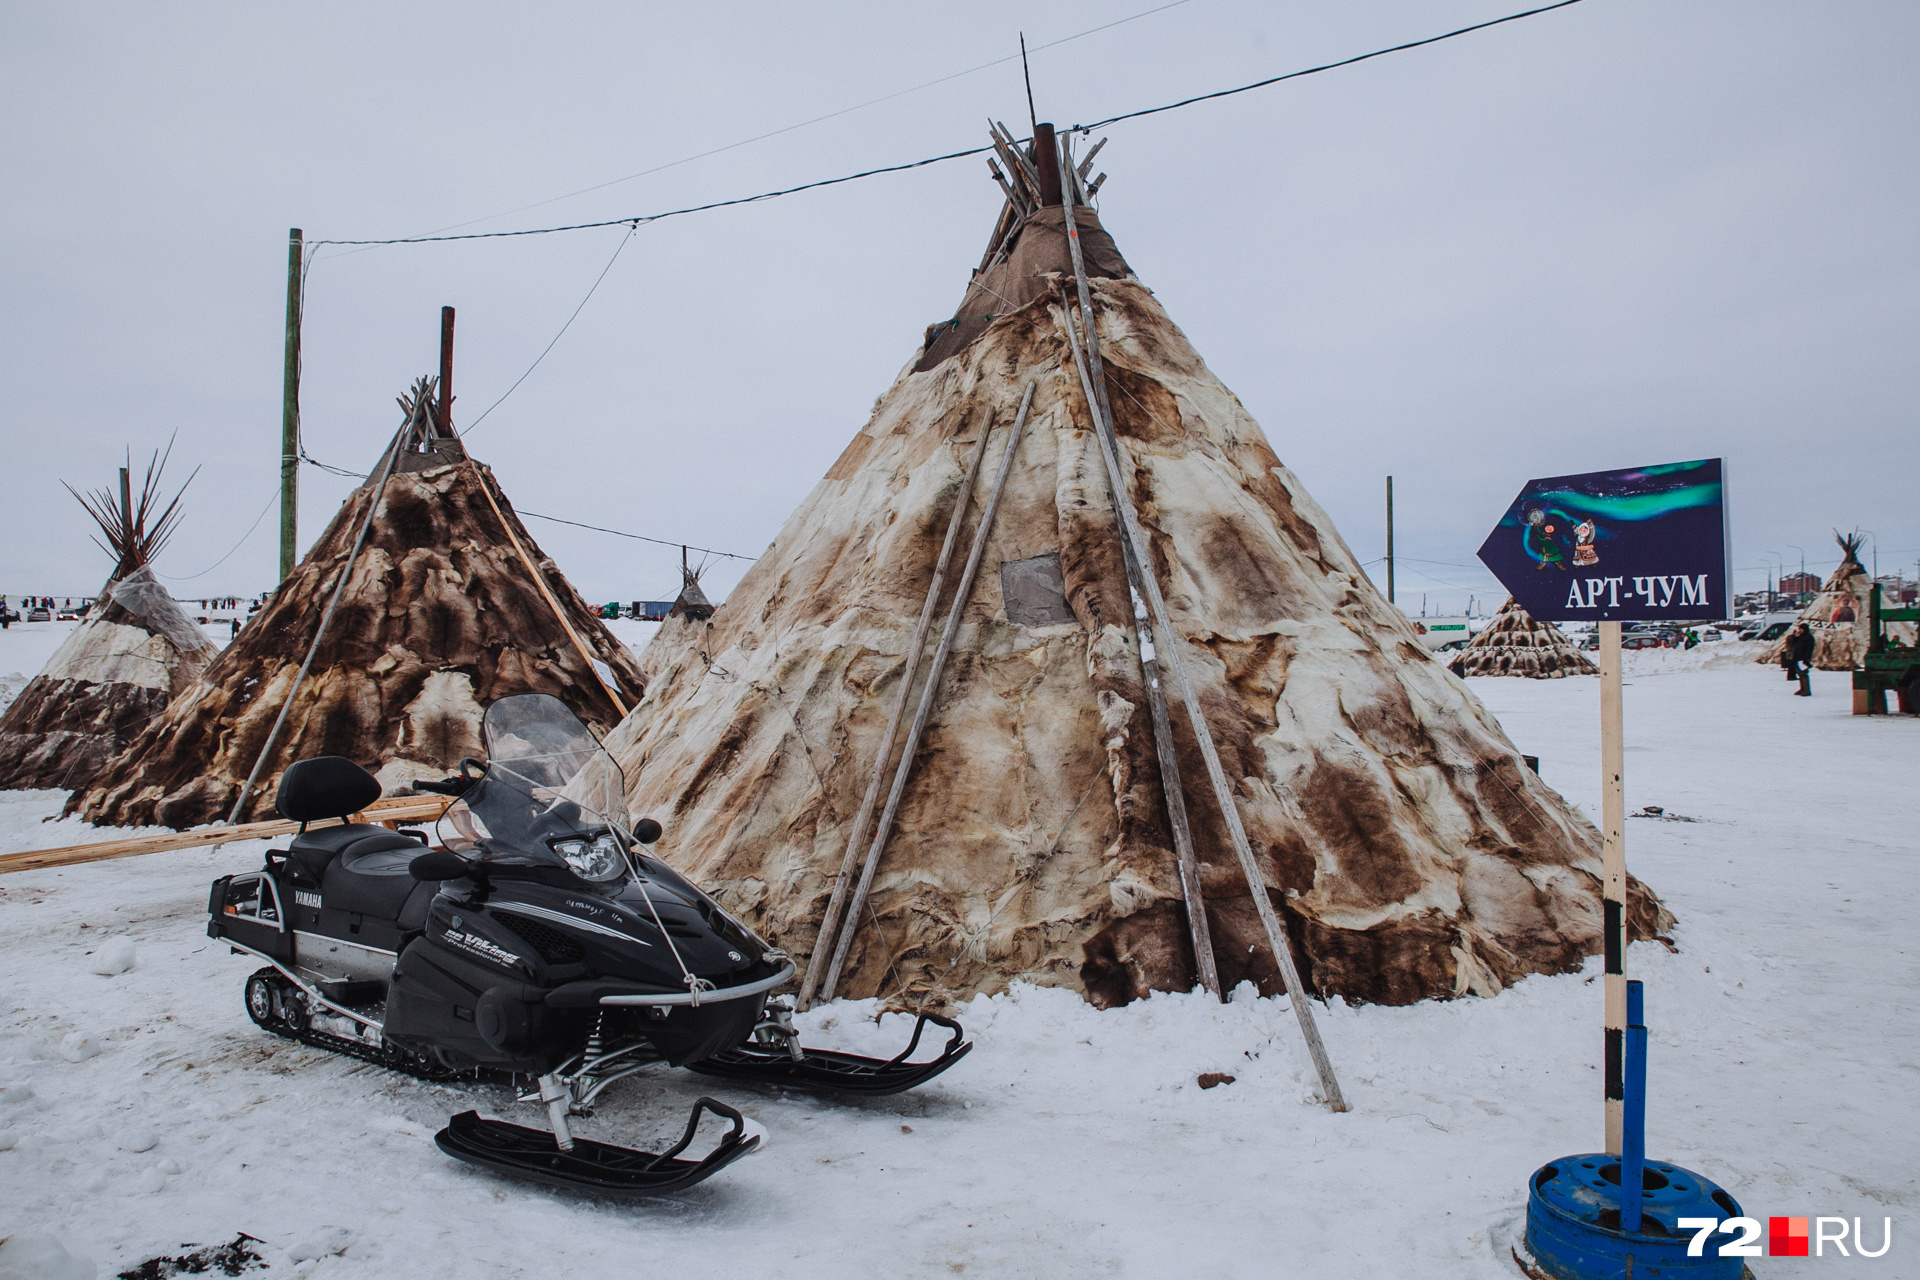 Так выглядит традиционное жилище коренных народов Севера. На один чум уходит более 50 оленьих шкур и 40 деревянных шестов